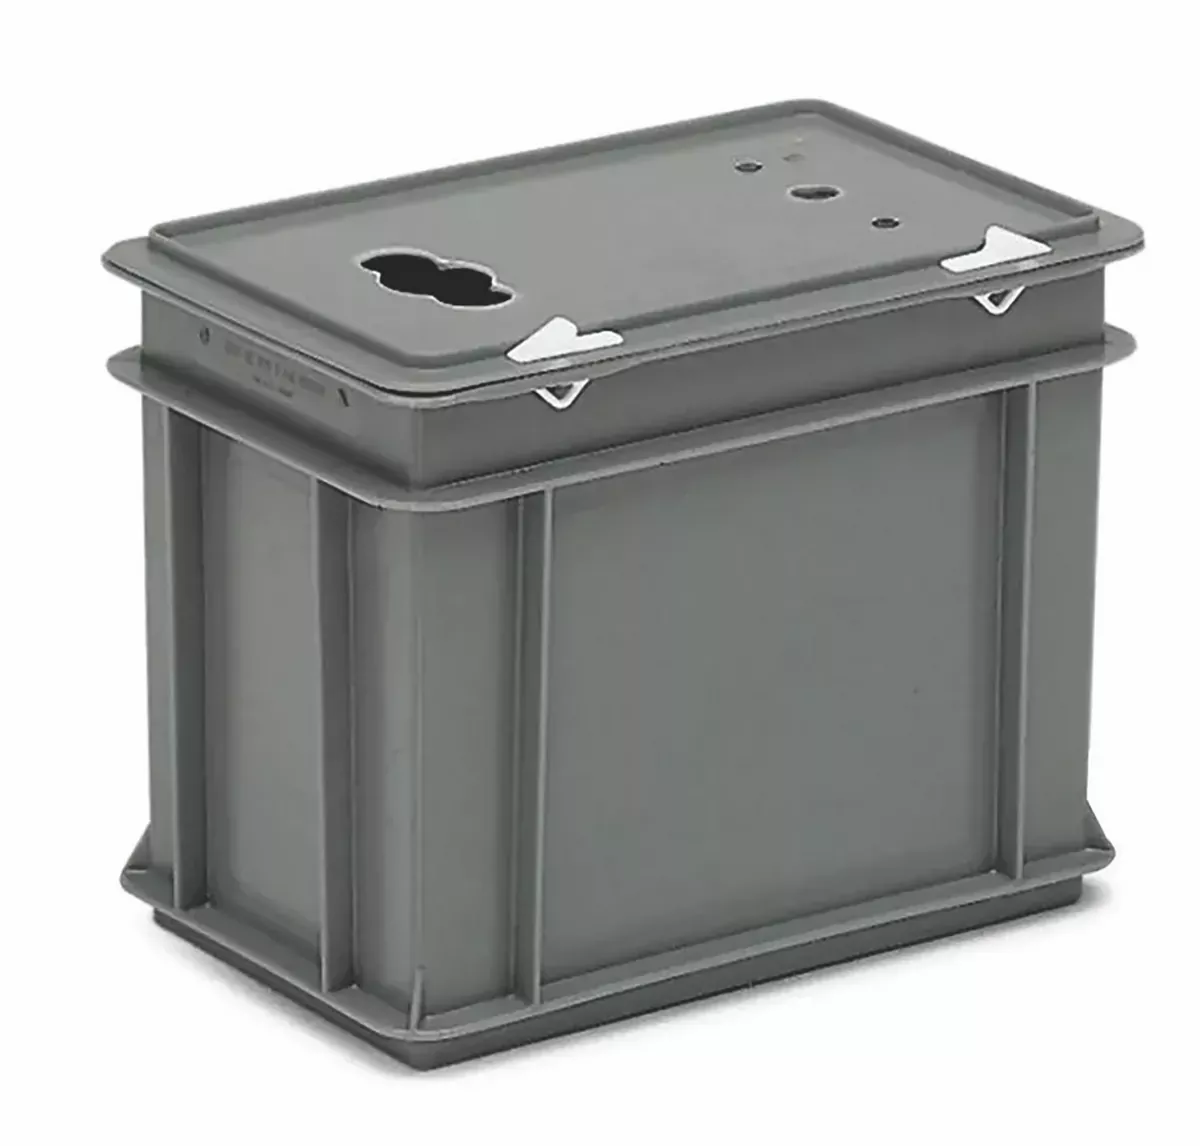 Altbatterie-Sammelbox in Kunststoff, 9 Liter